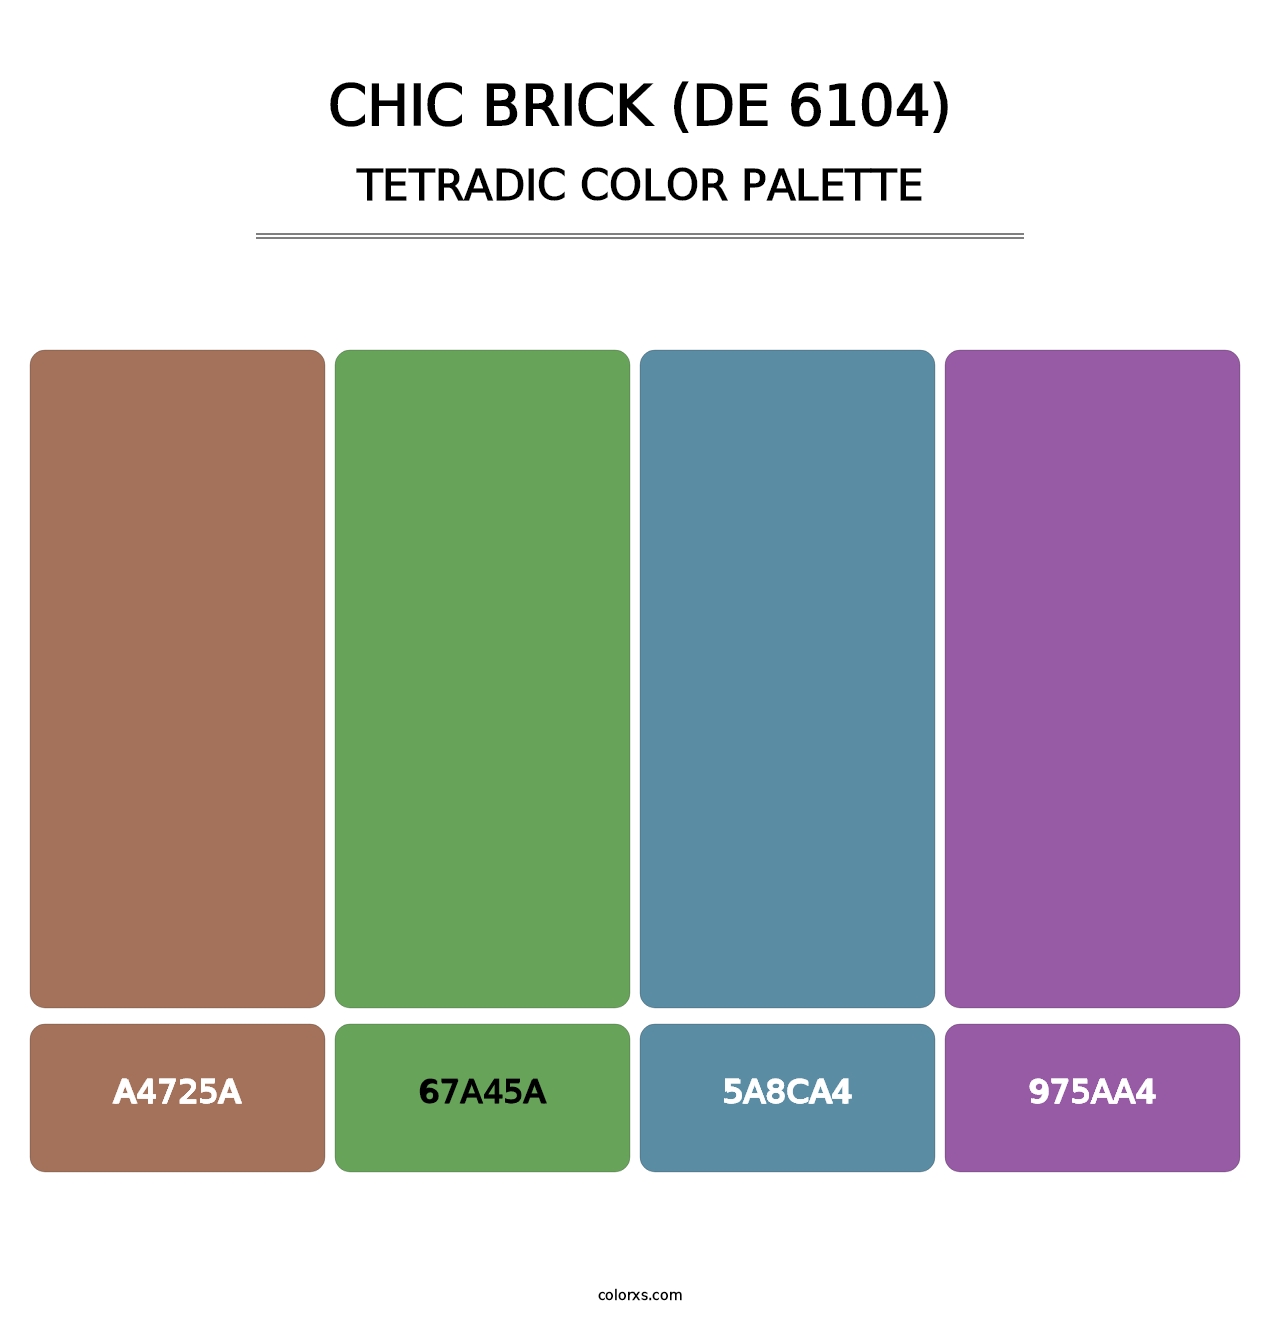 Chic Brick (DE 6104) - Tetradic Color Palette